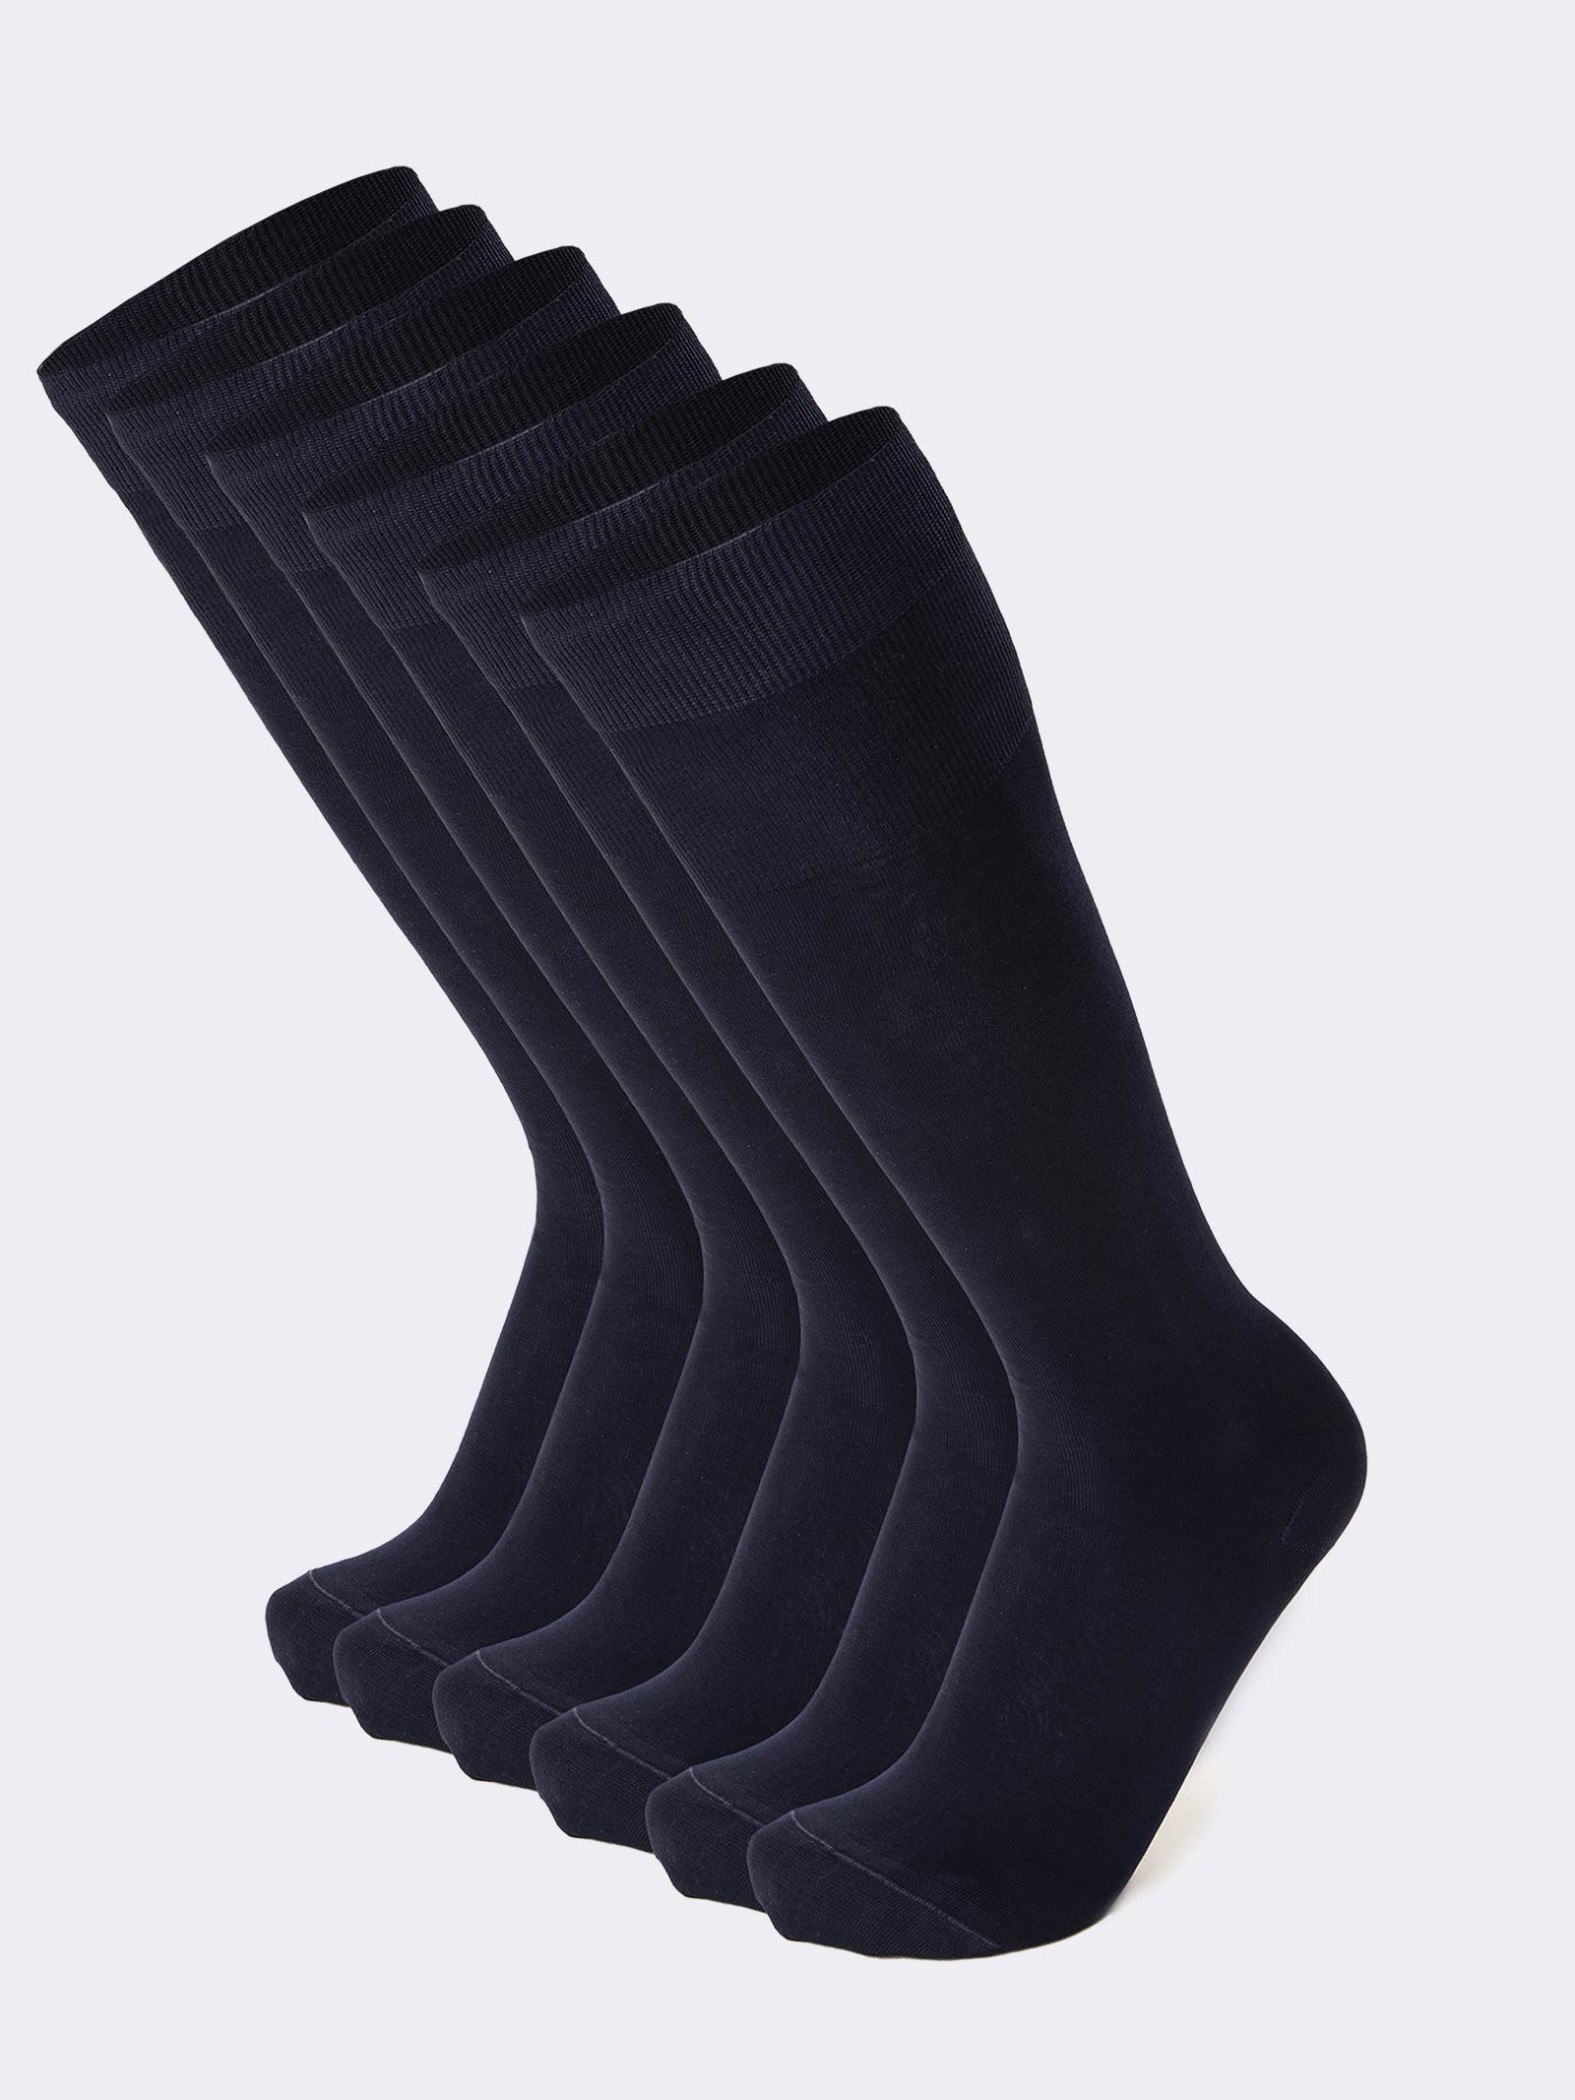 6 paia calze lunghe Uomo in Cotone Filo di Scozia - Colori Classici